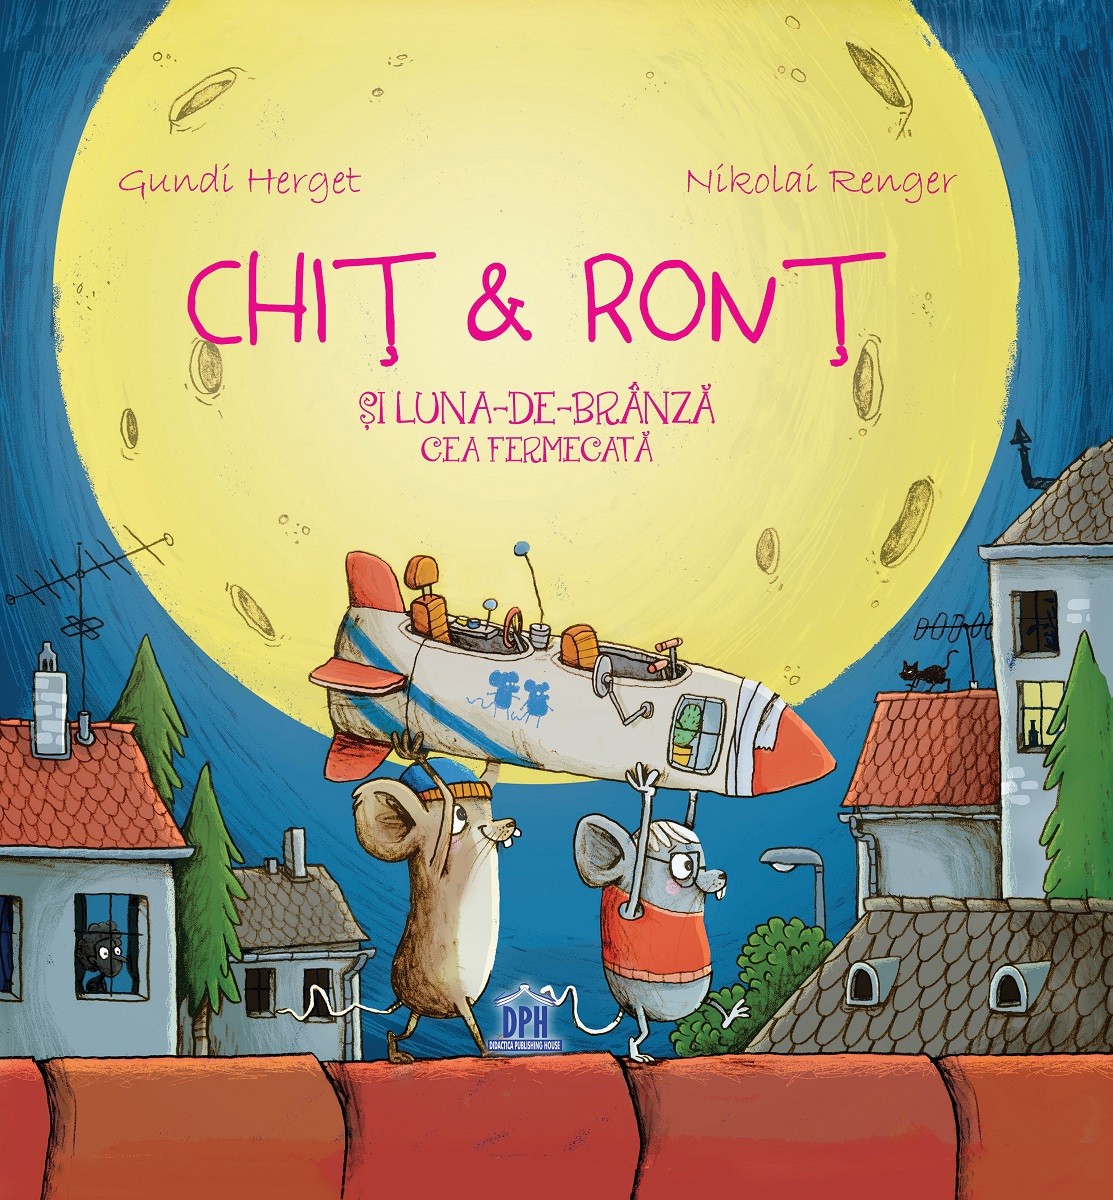 Chit & Ront si Luna-de-branza cea fermecata | Gundi Herget carturesti.ro imagine 2022